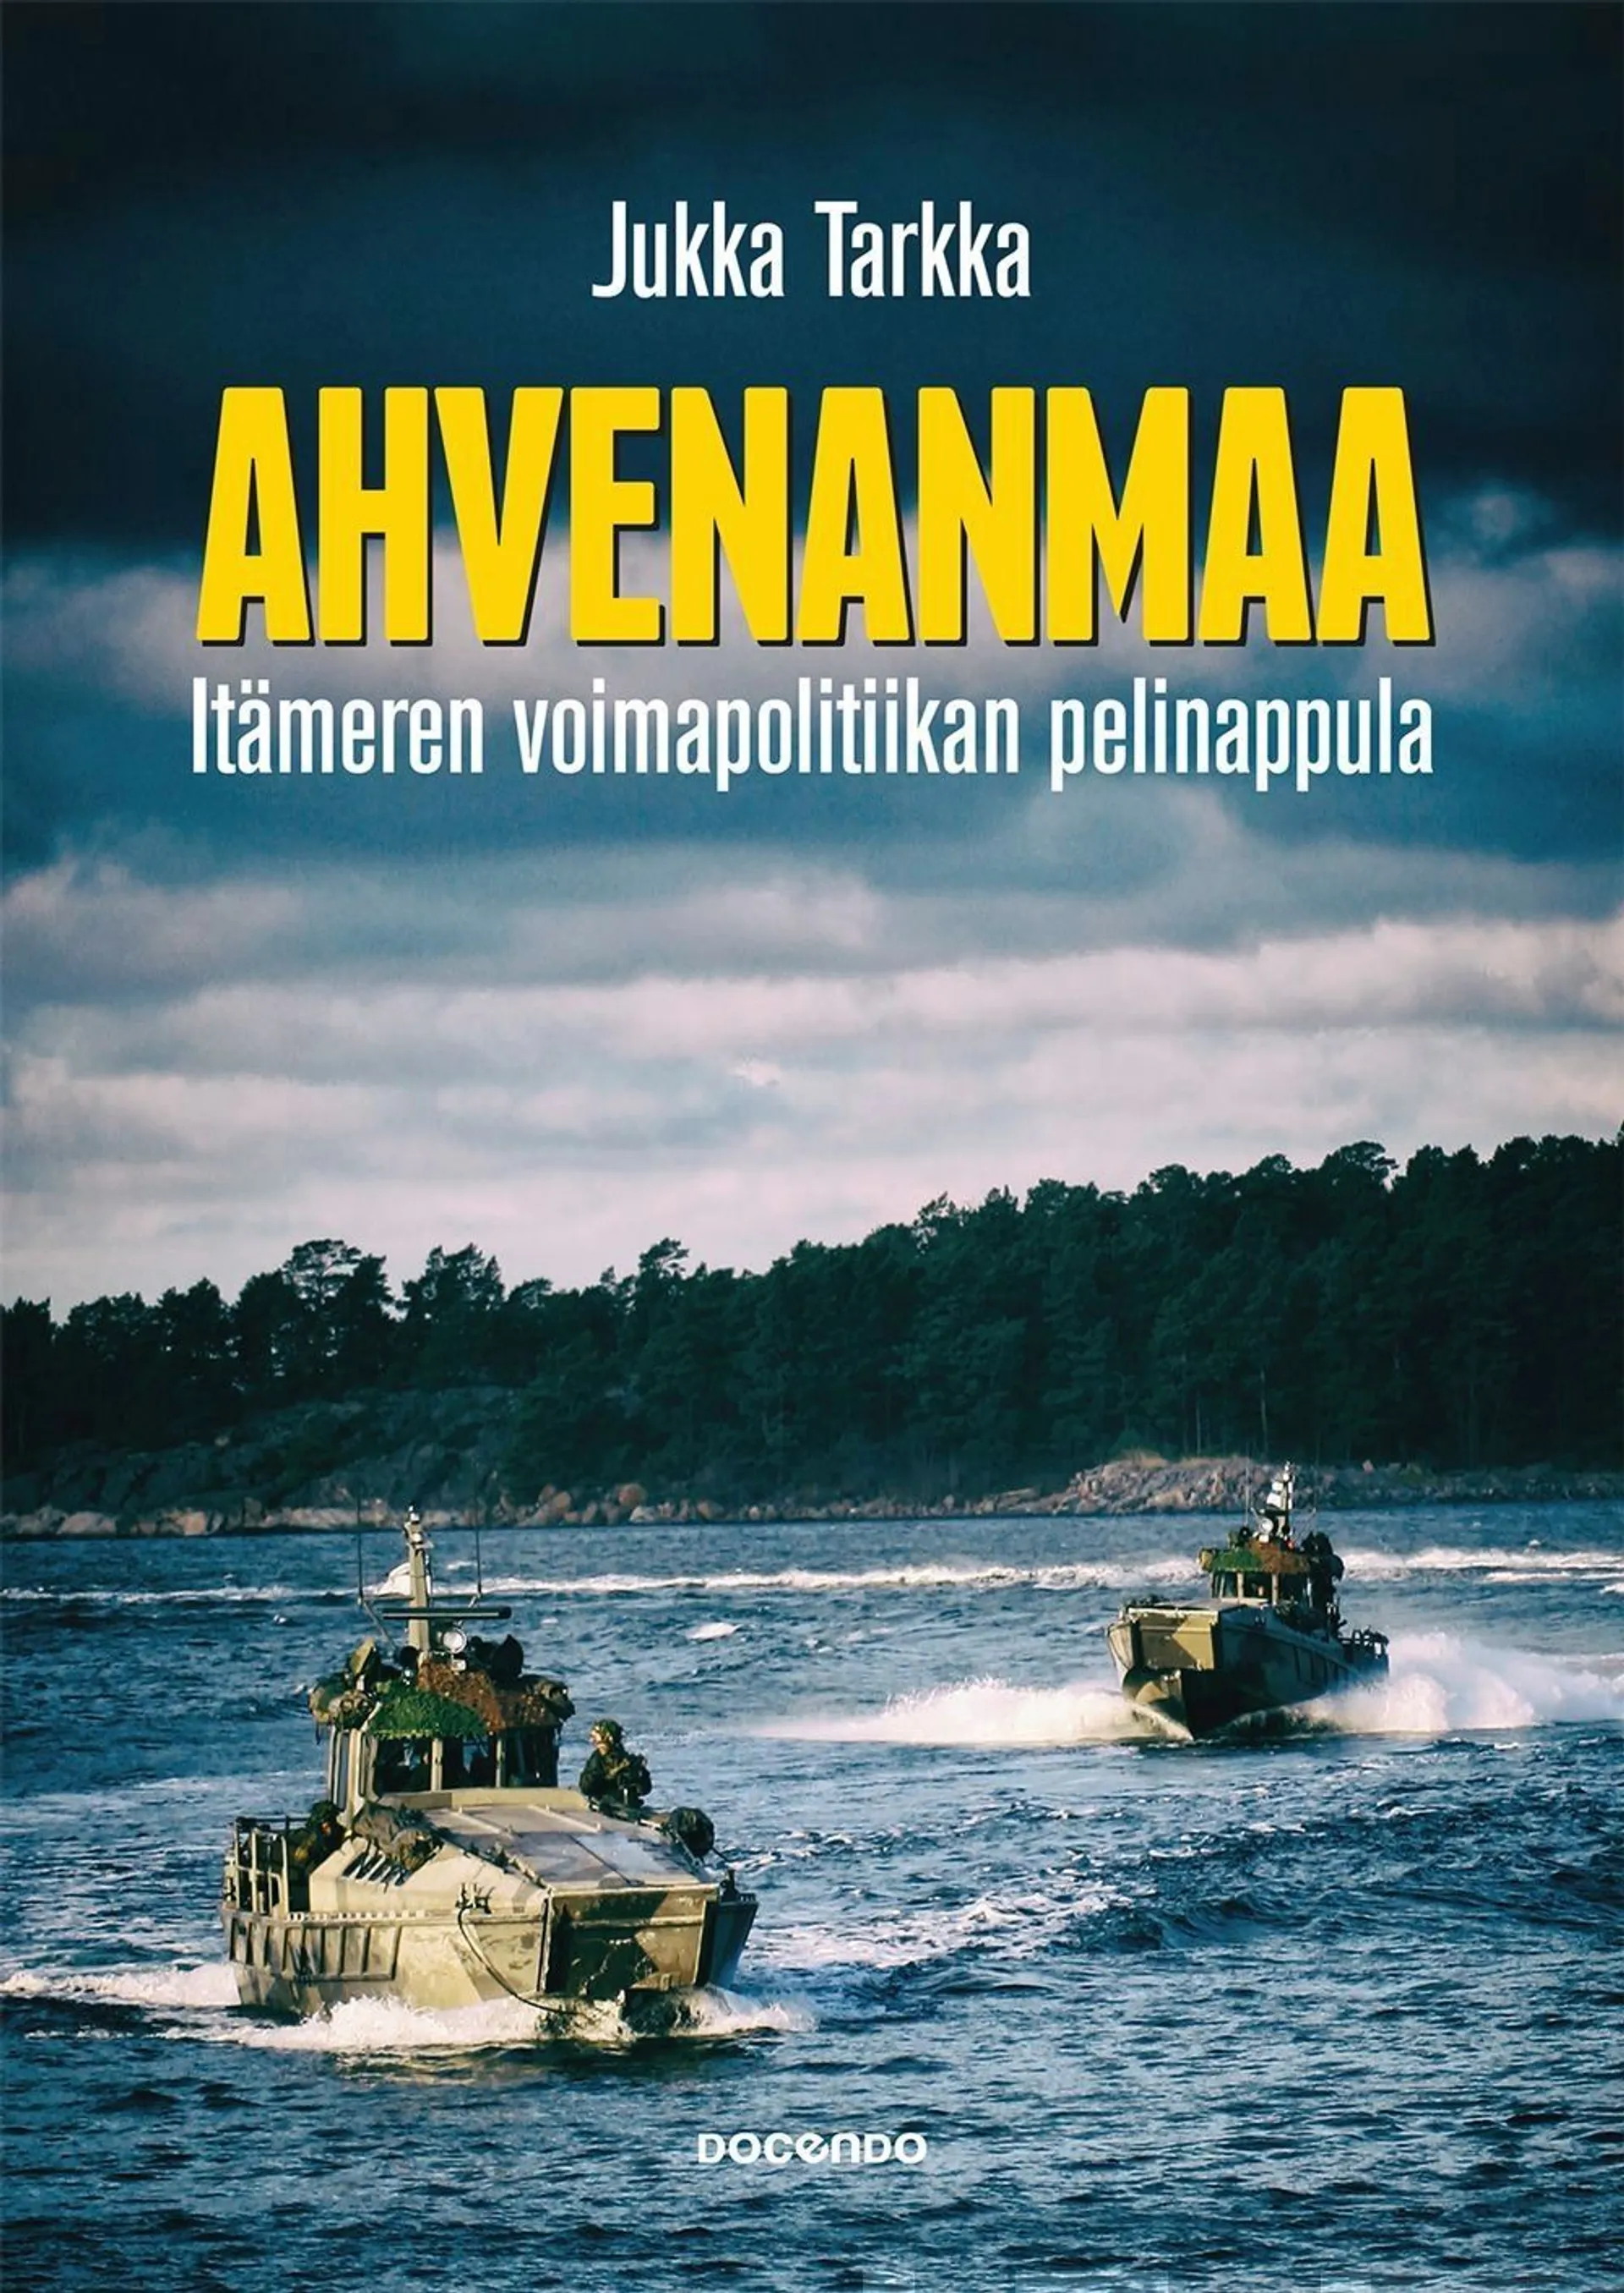 Tarkka, Ahvenanmaa - Itämeren voimapolitiikan pelinappula